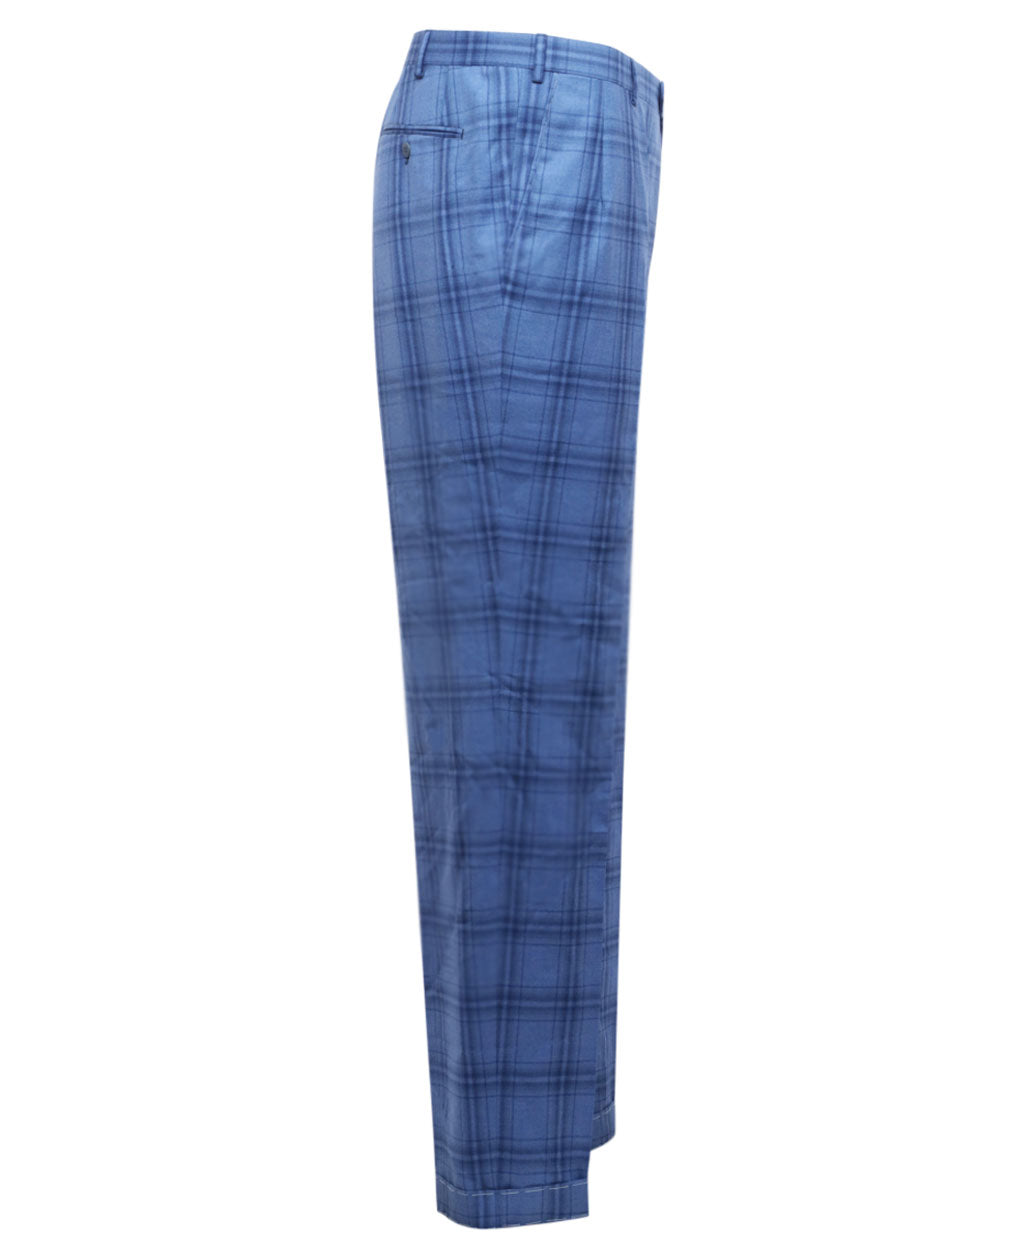 Blue Plaid Dress Trouser